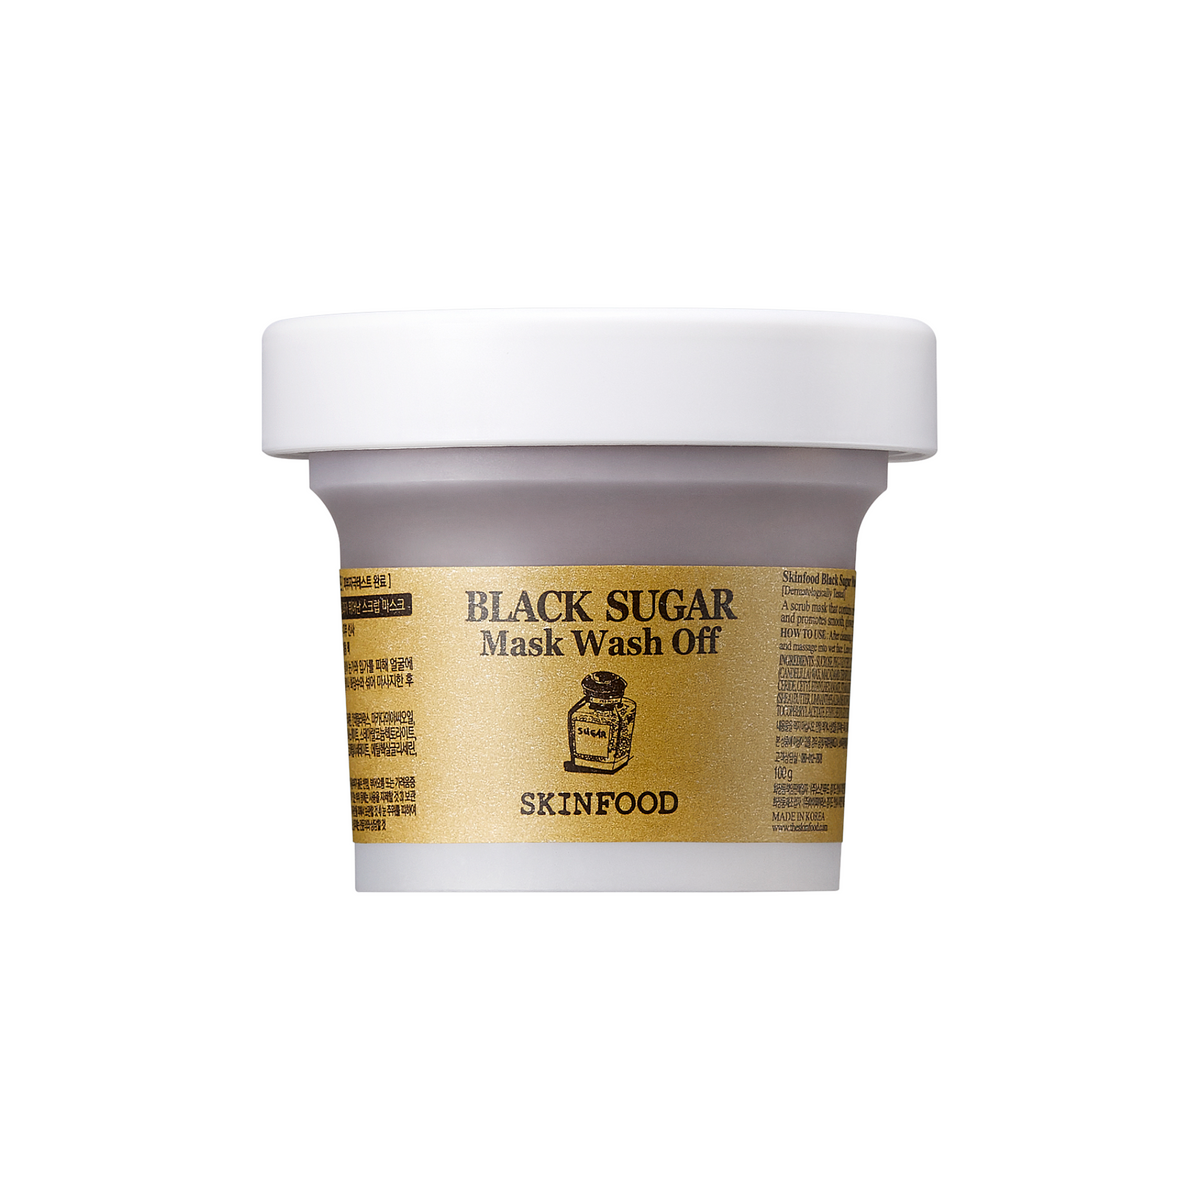 SKINFOOD Black Sugar Mask Wash Off (100g)